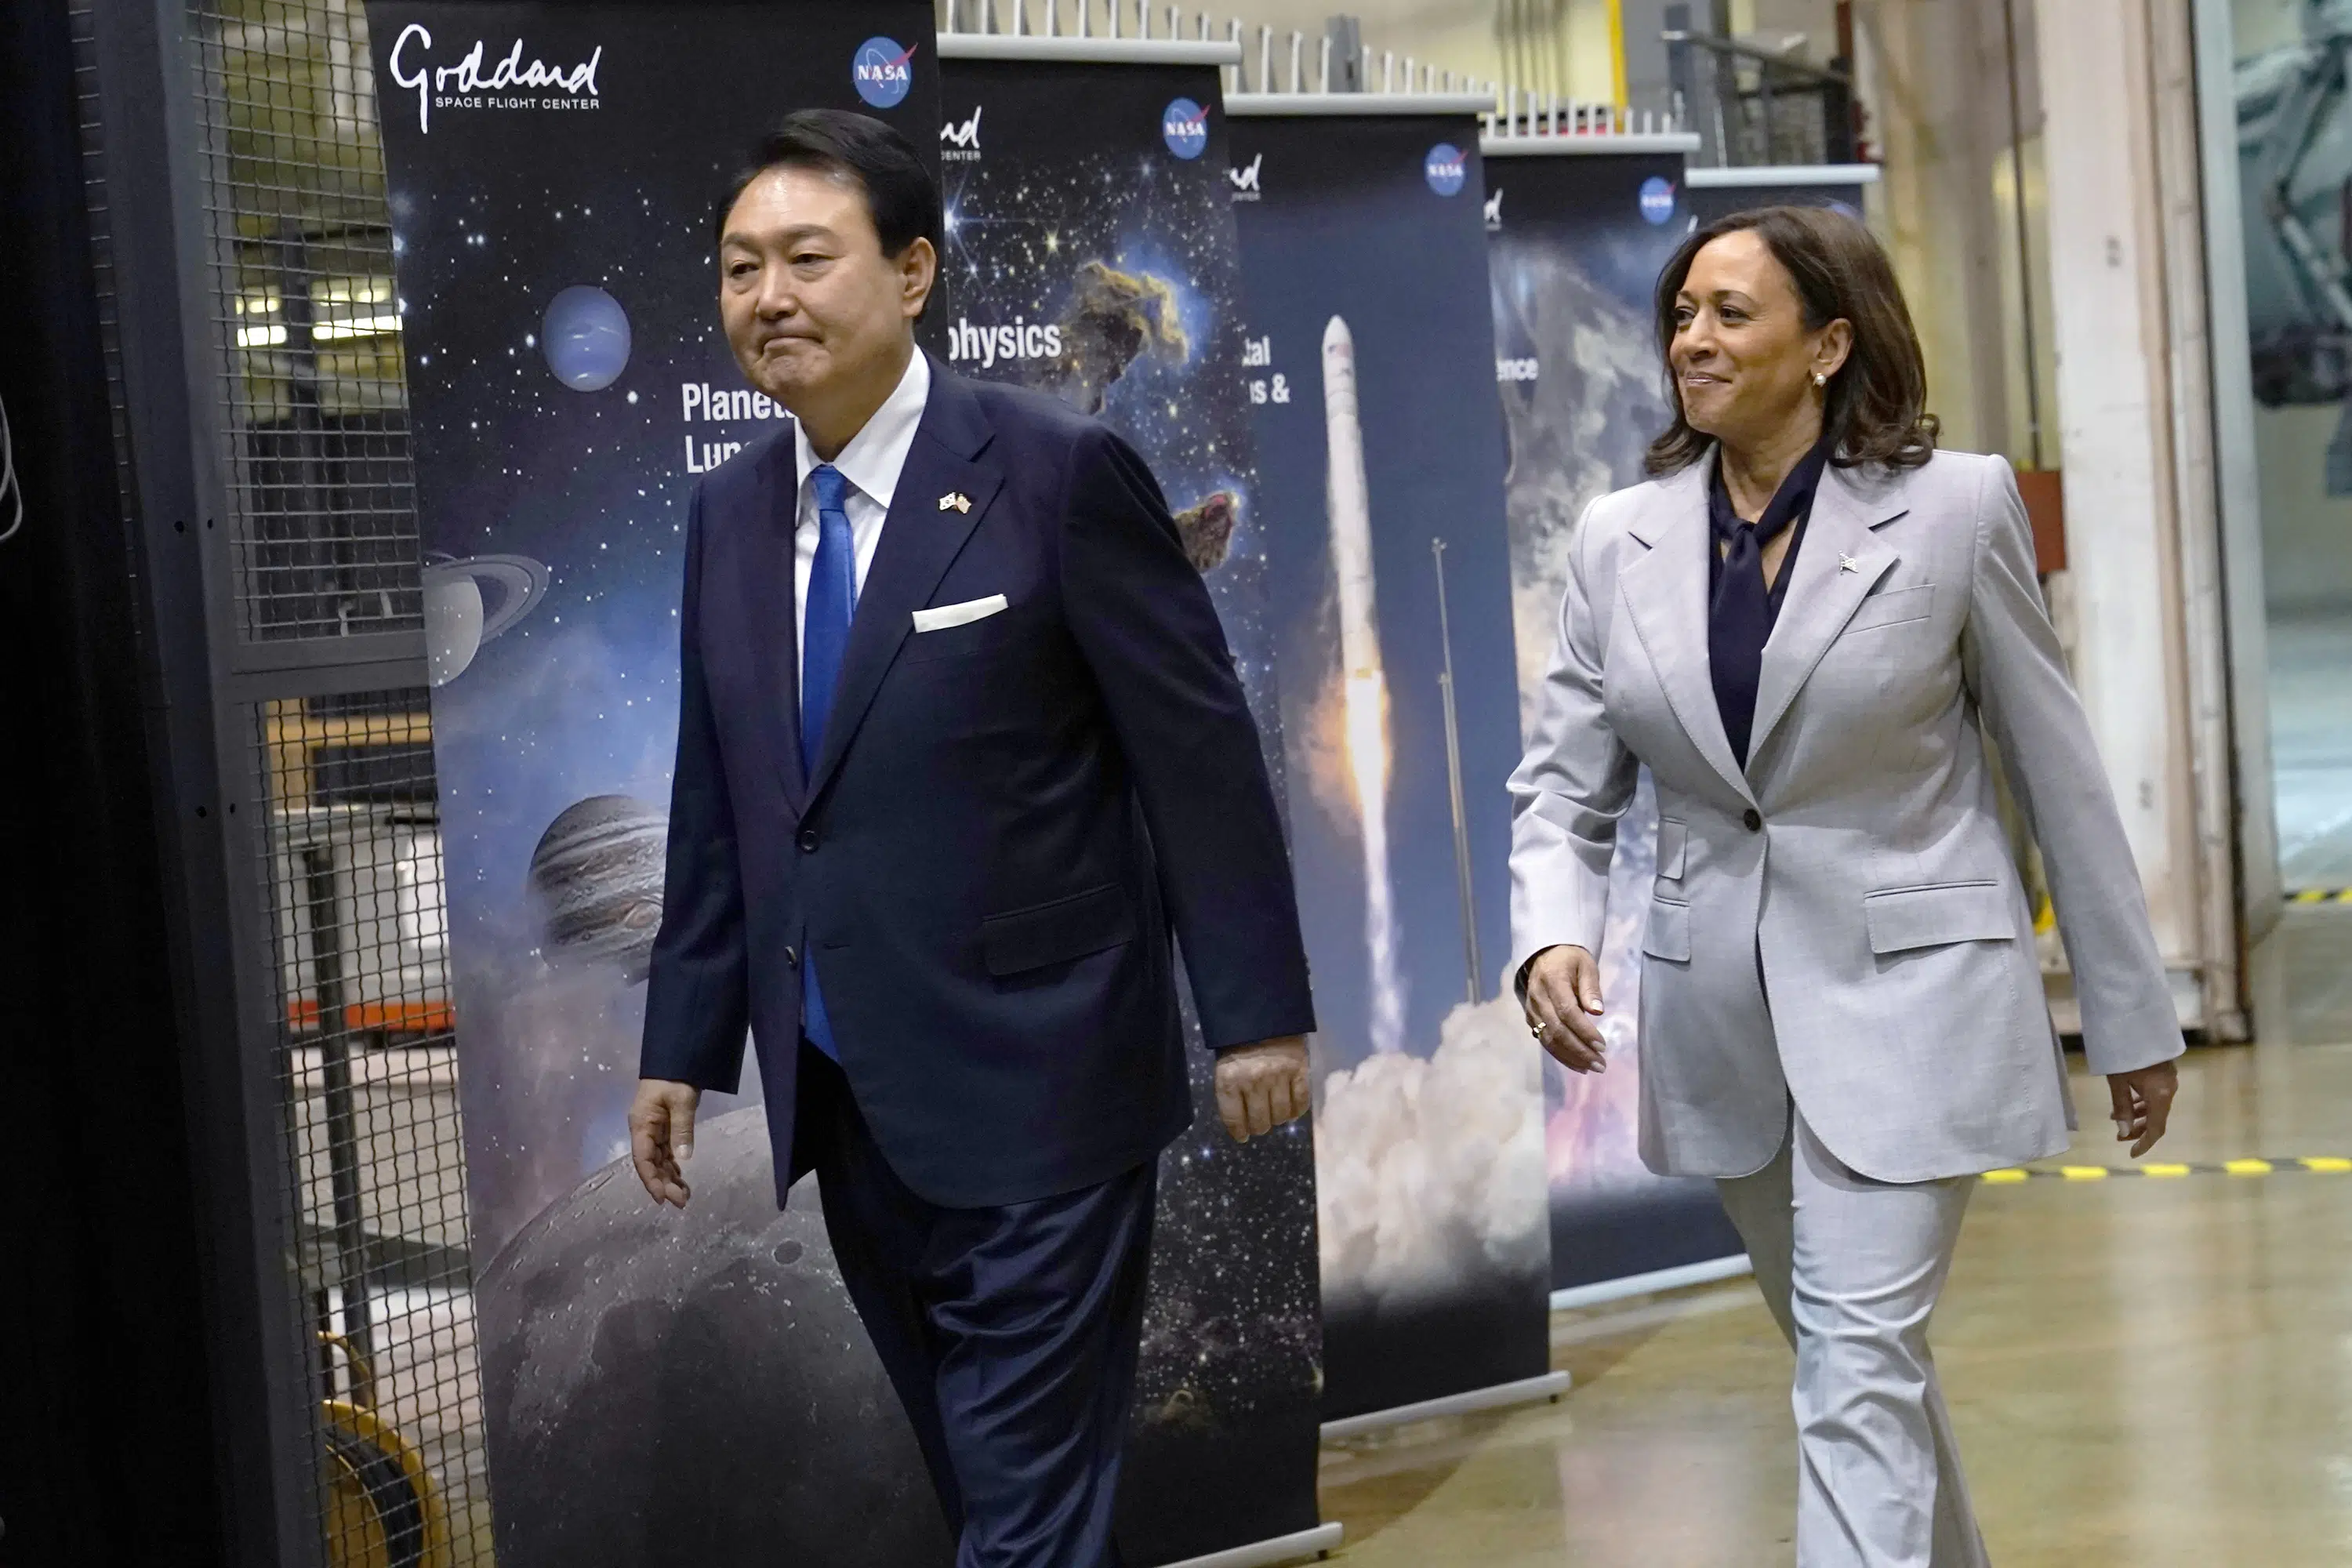 Yoon otwiera wizytę państwową, koncentrując się na kosmosie, mega okazjach